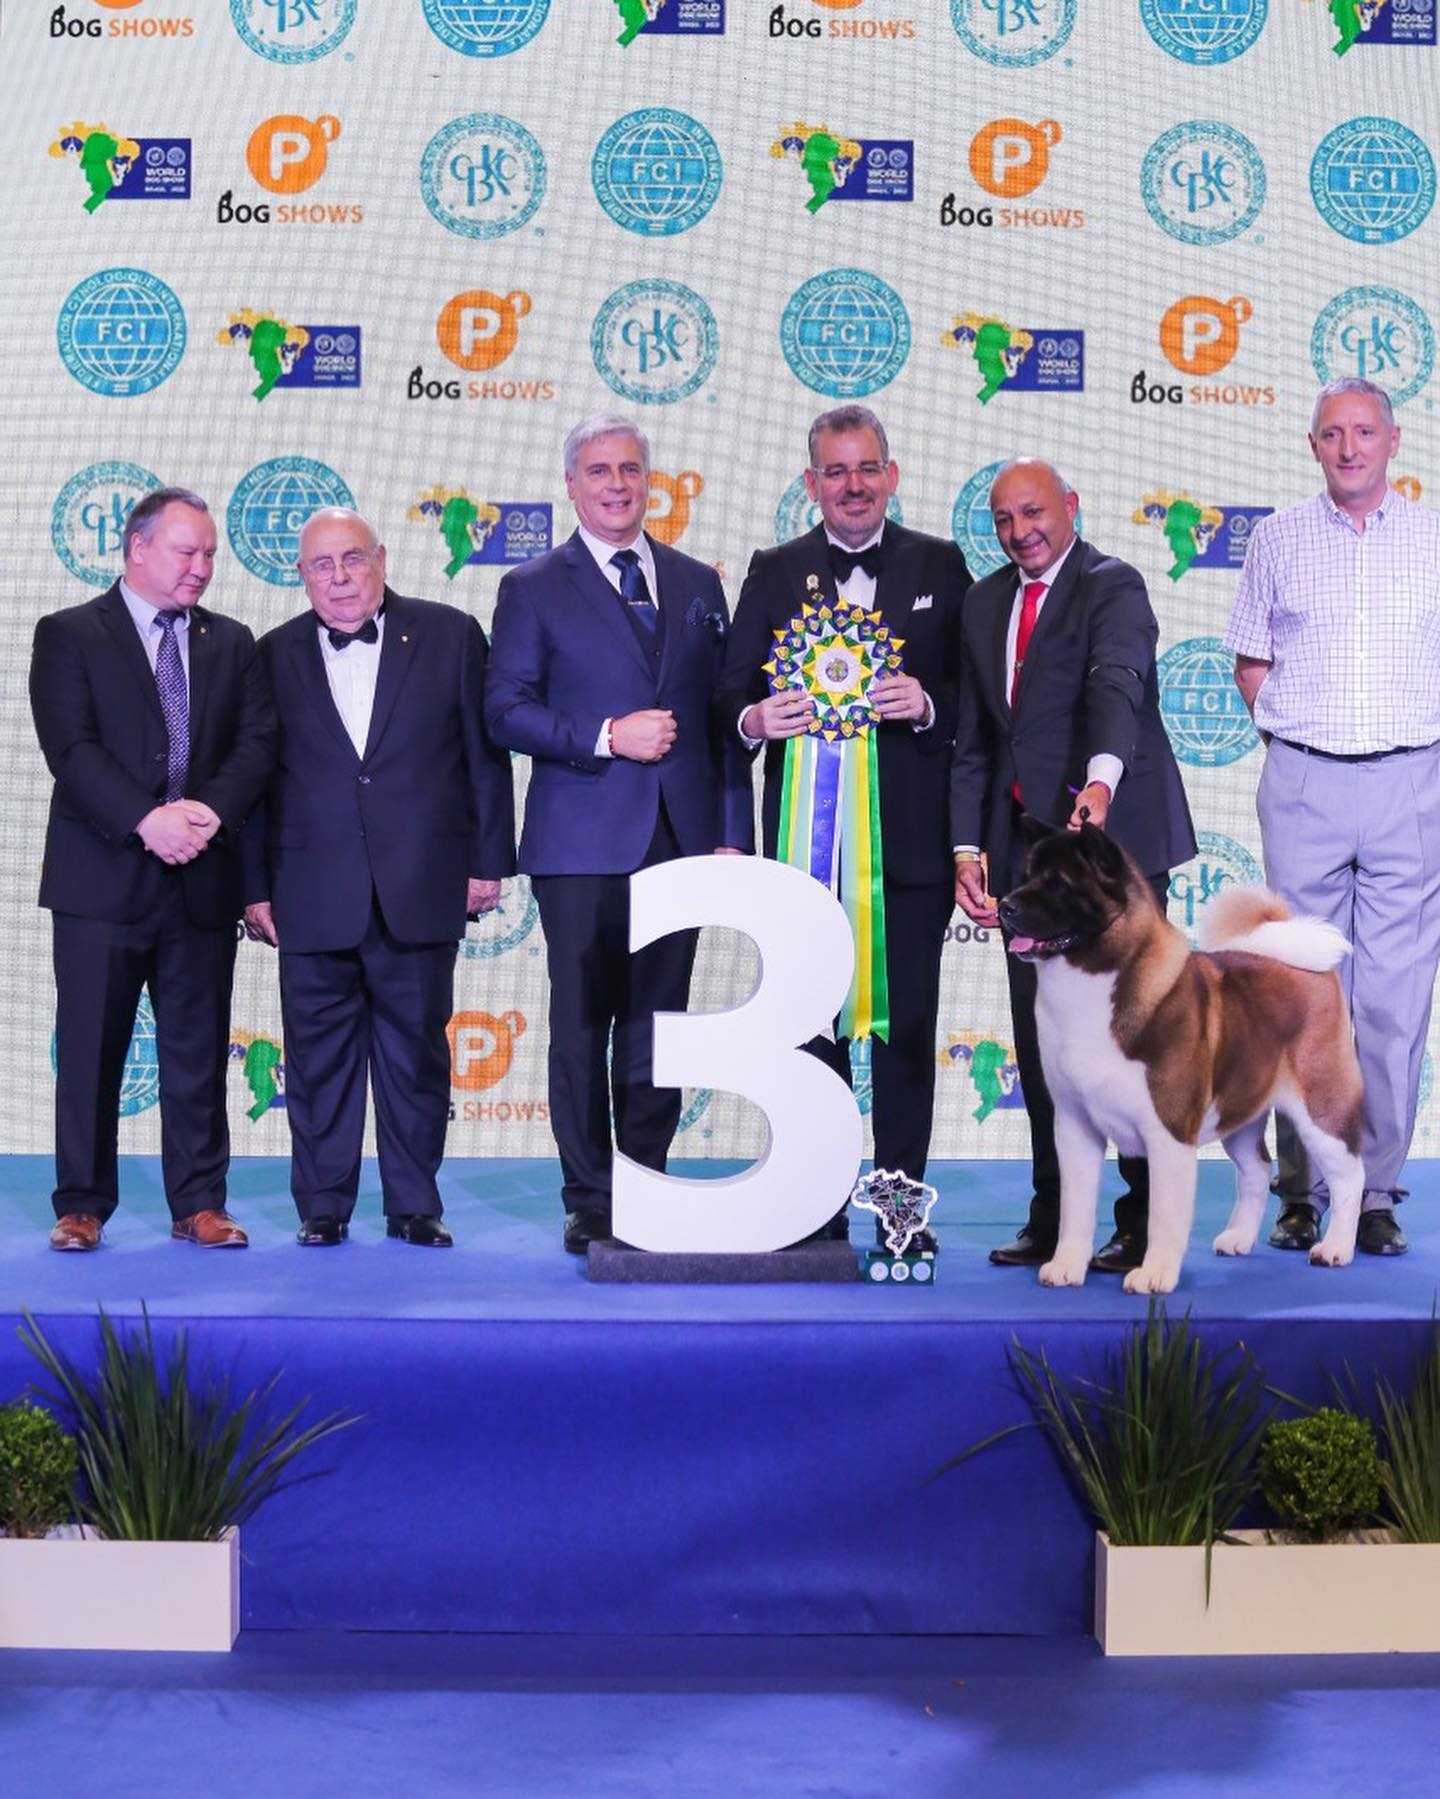 Shih-tzu brasileira é a grande vencedora da premiação 'Melhor Cão